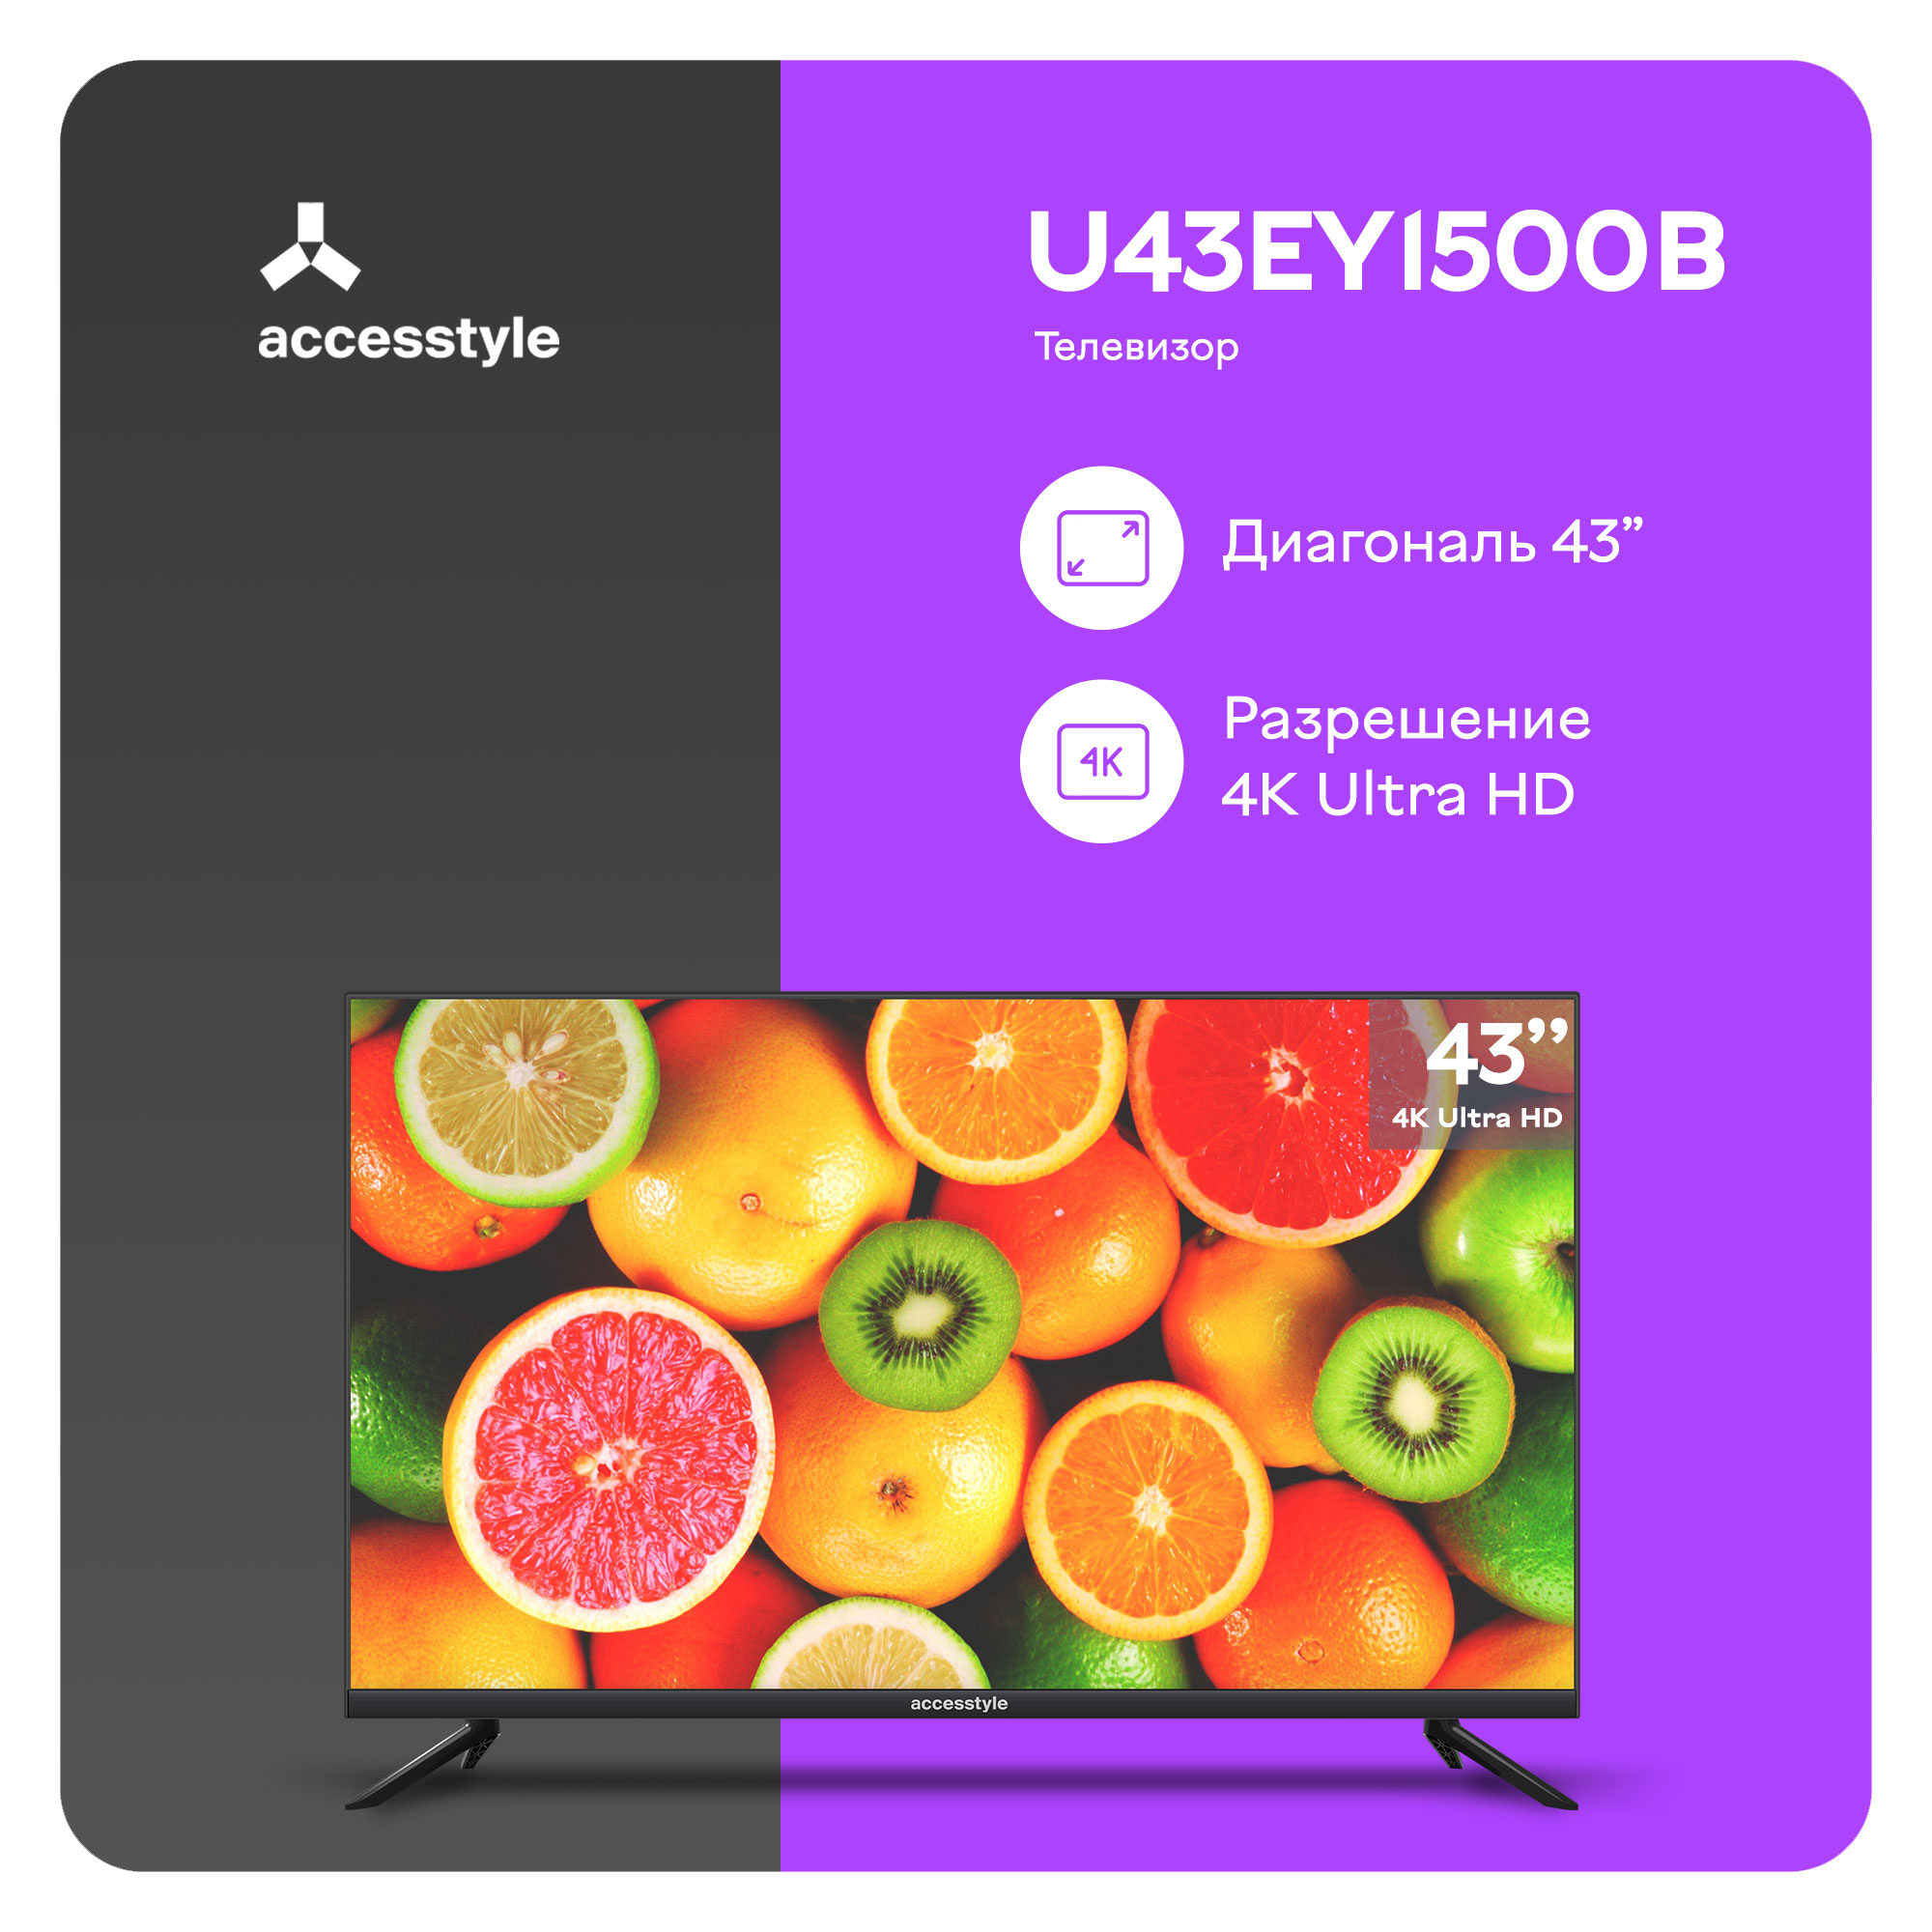 Телевизор Accesstyle U43EY1500B, 43"(109 см), UHD 4K, купить в Москве, цены в интернет-магазинах на Мегамаркет